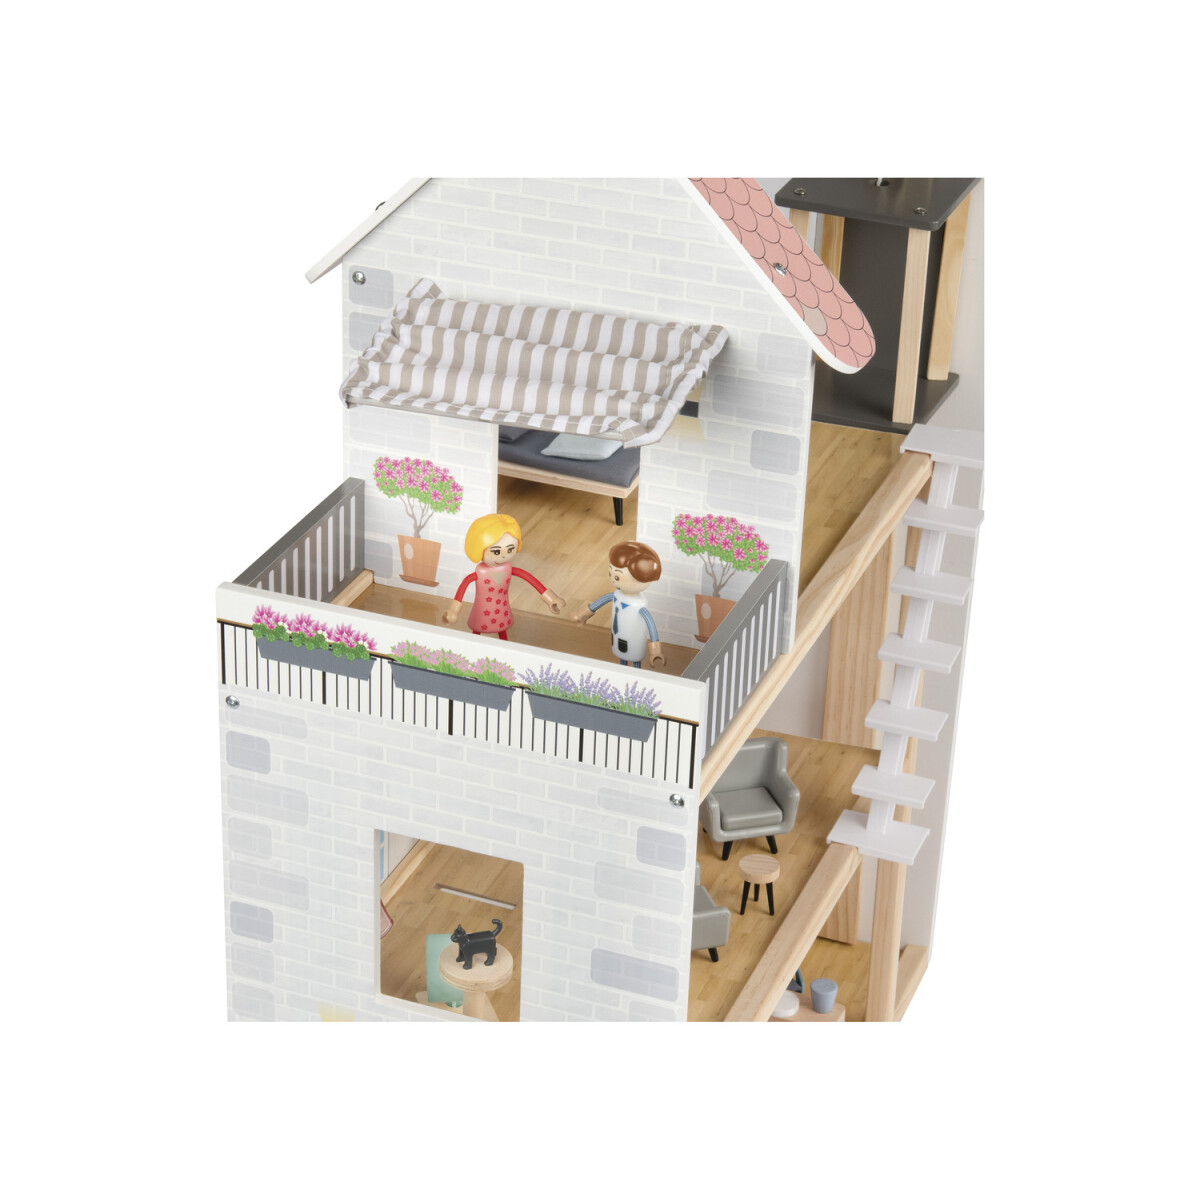 Playtive 54-teilig, 2 - Holz Puppen mit B-Ware Puppenhaus, 49,99 € neuwertig,